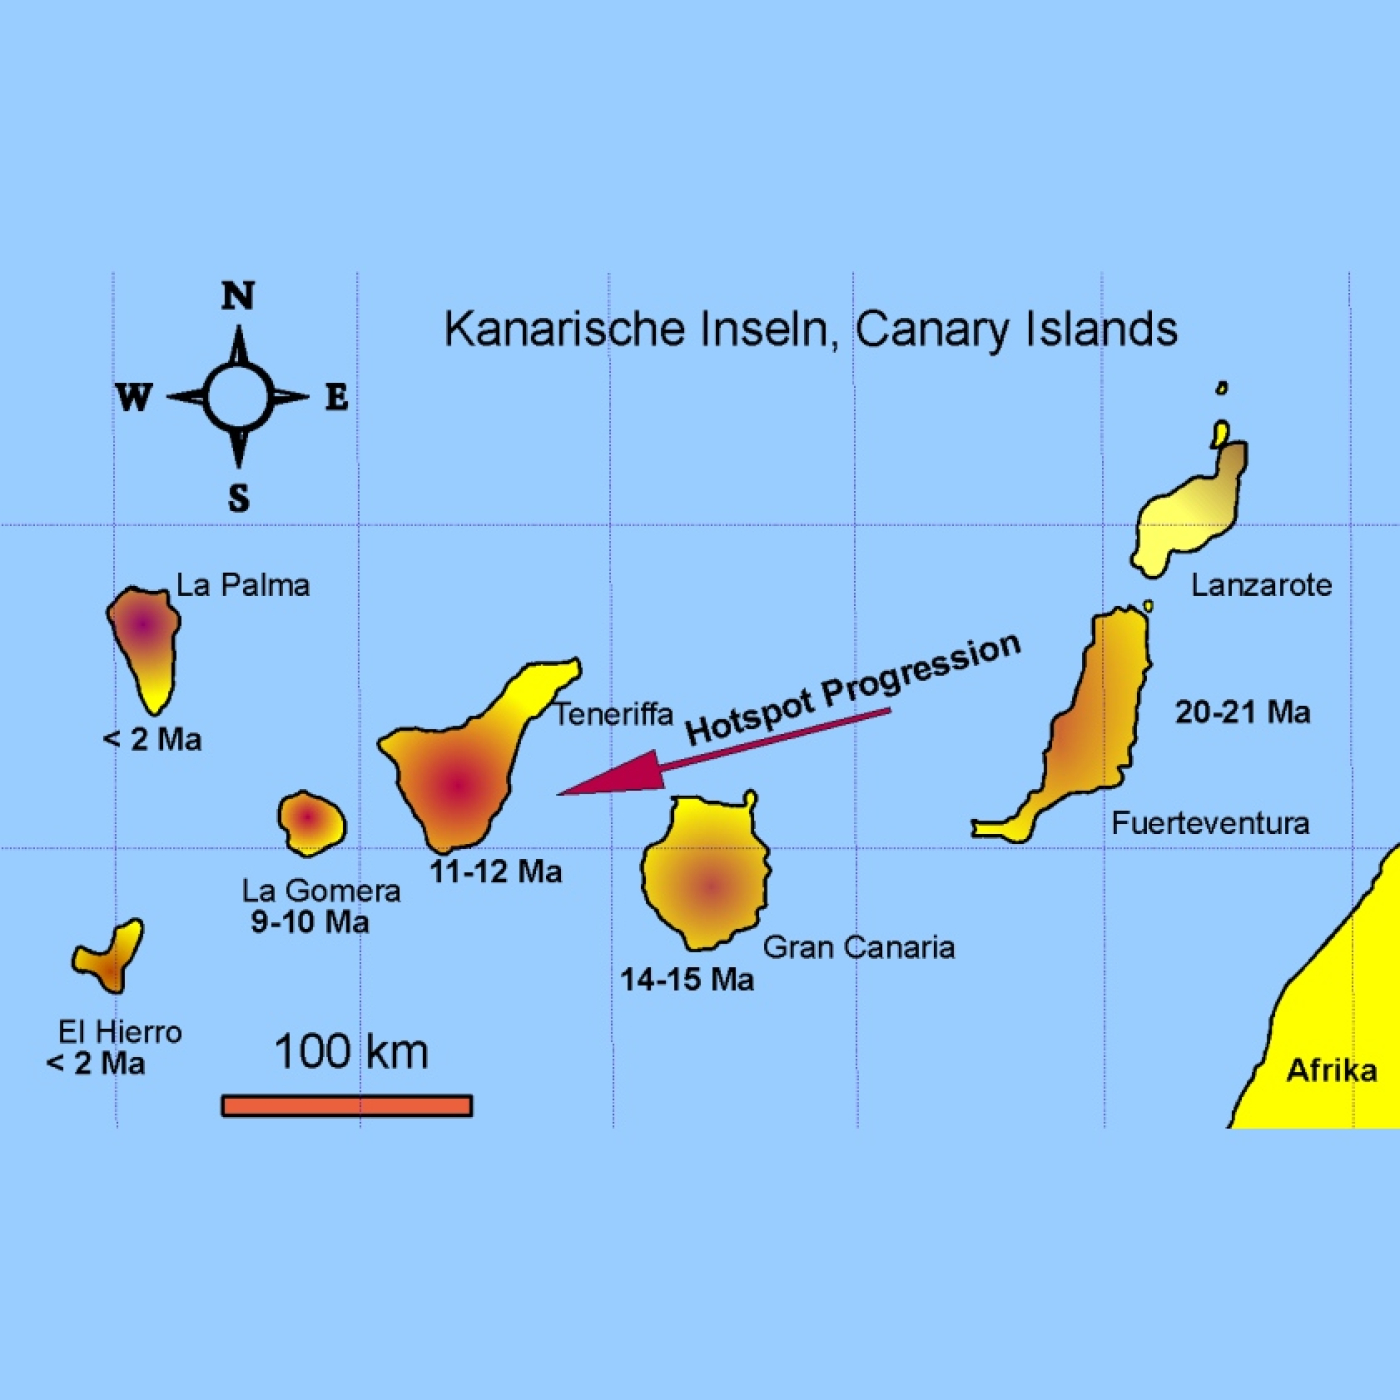 Aparici en Órbita s05e20: El origen geológico de las islas Canarias, con Juan Carlos Carracedo